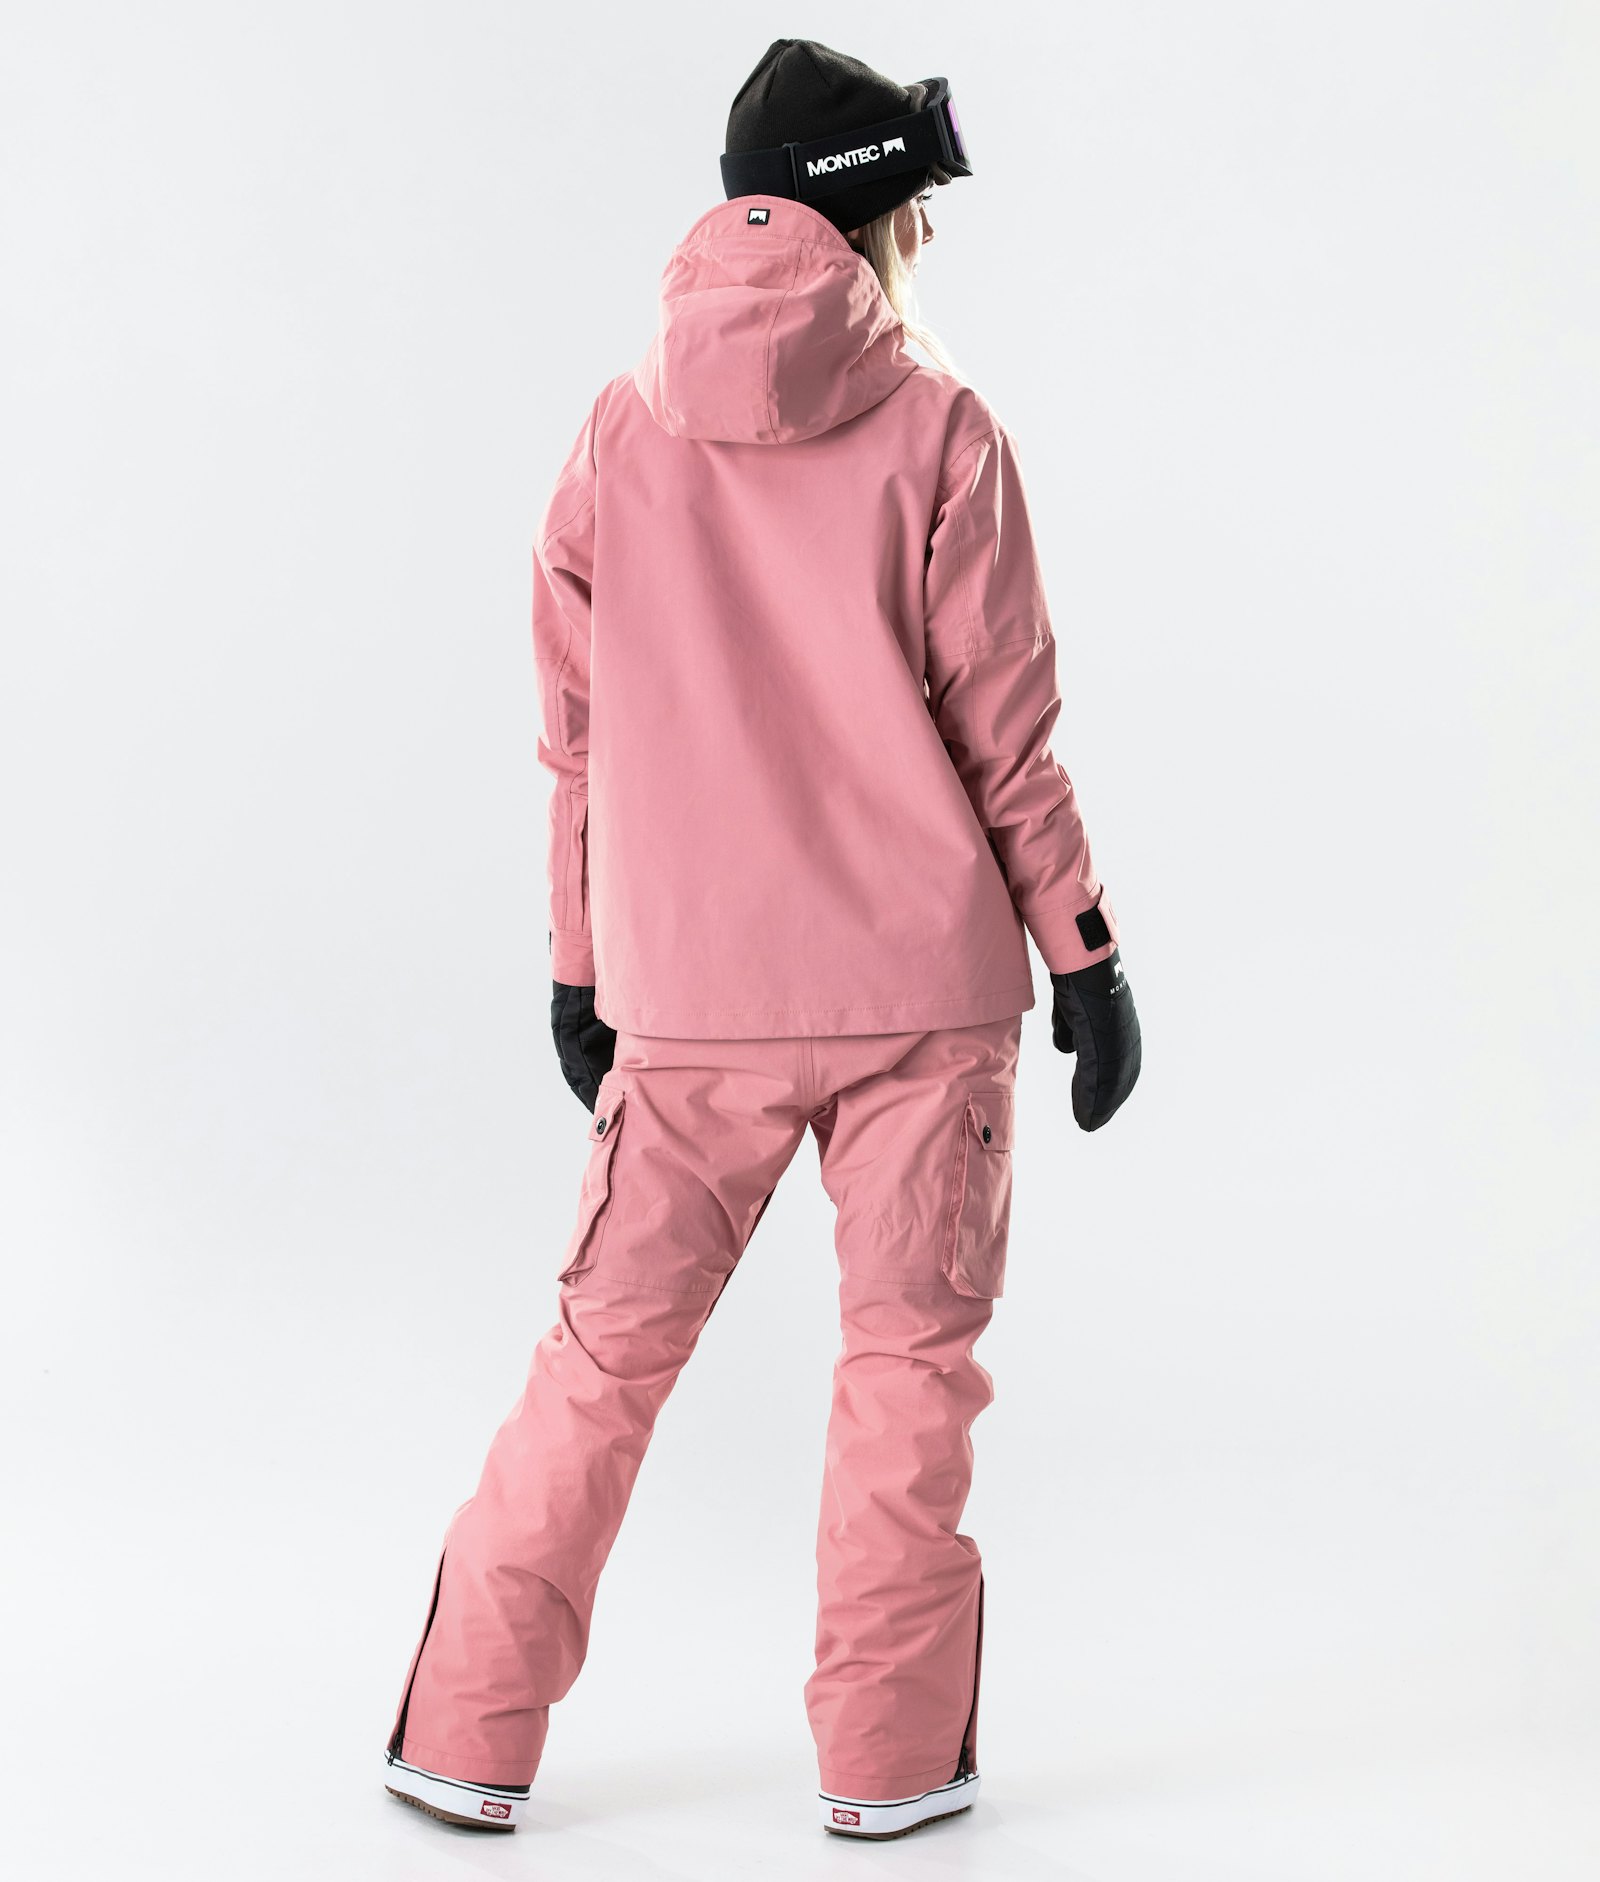 Typhoon W 2020 Snowboardjacke Damen Pink